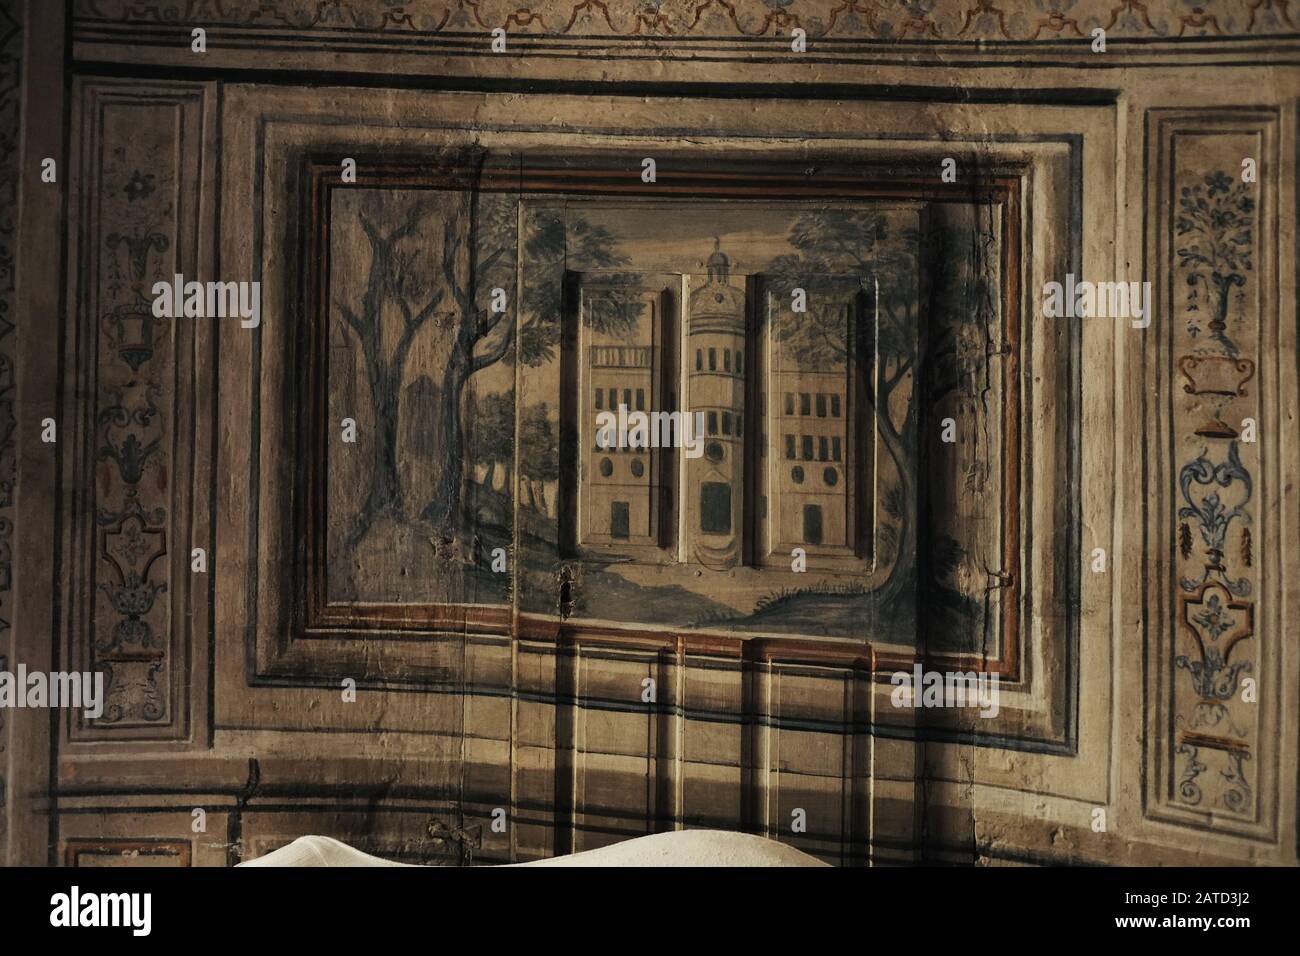 Una piccola arte popolare, pannello dipinto in stile trompe l'oeil, incorniciato come un dipinto.. In una sala torre salotto di Château de Bagnols, Francia Foto Stock